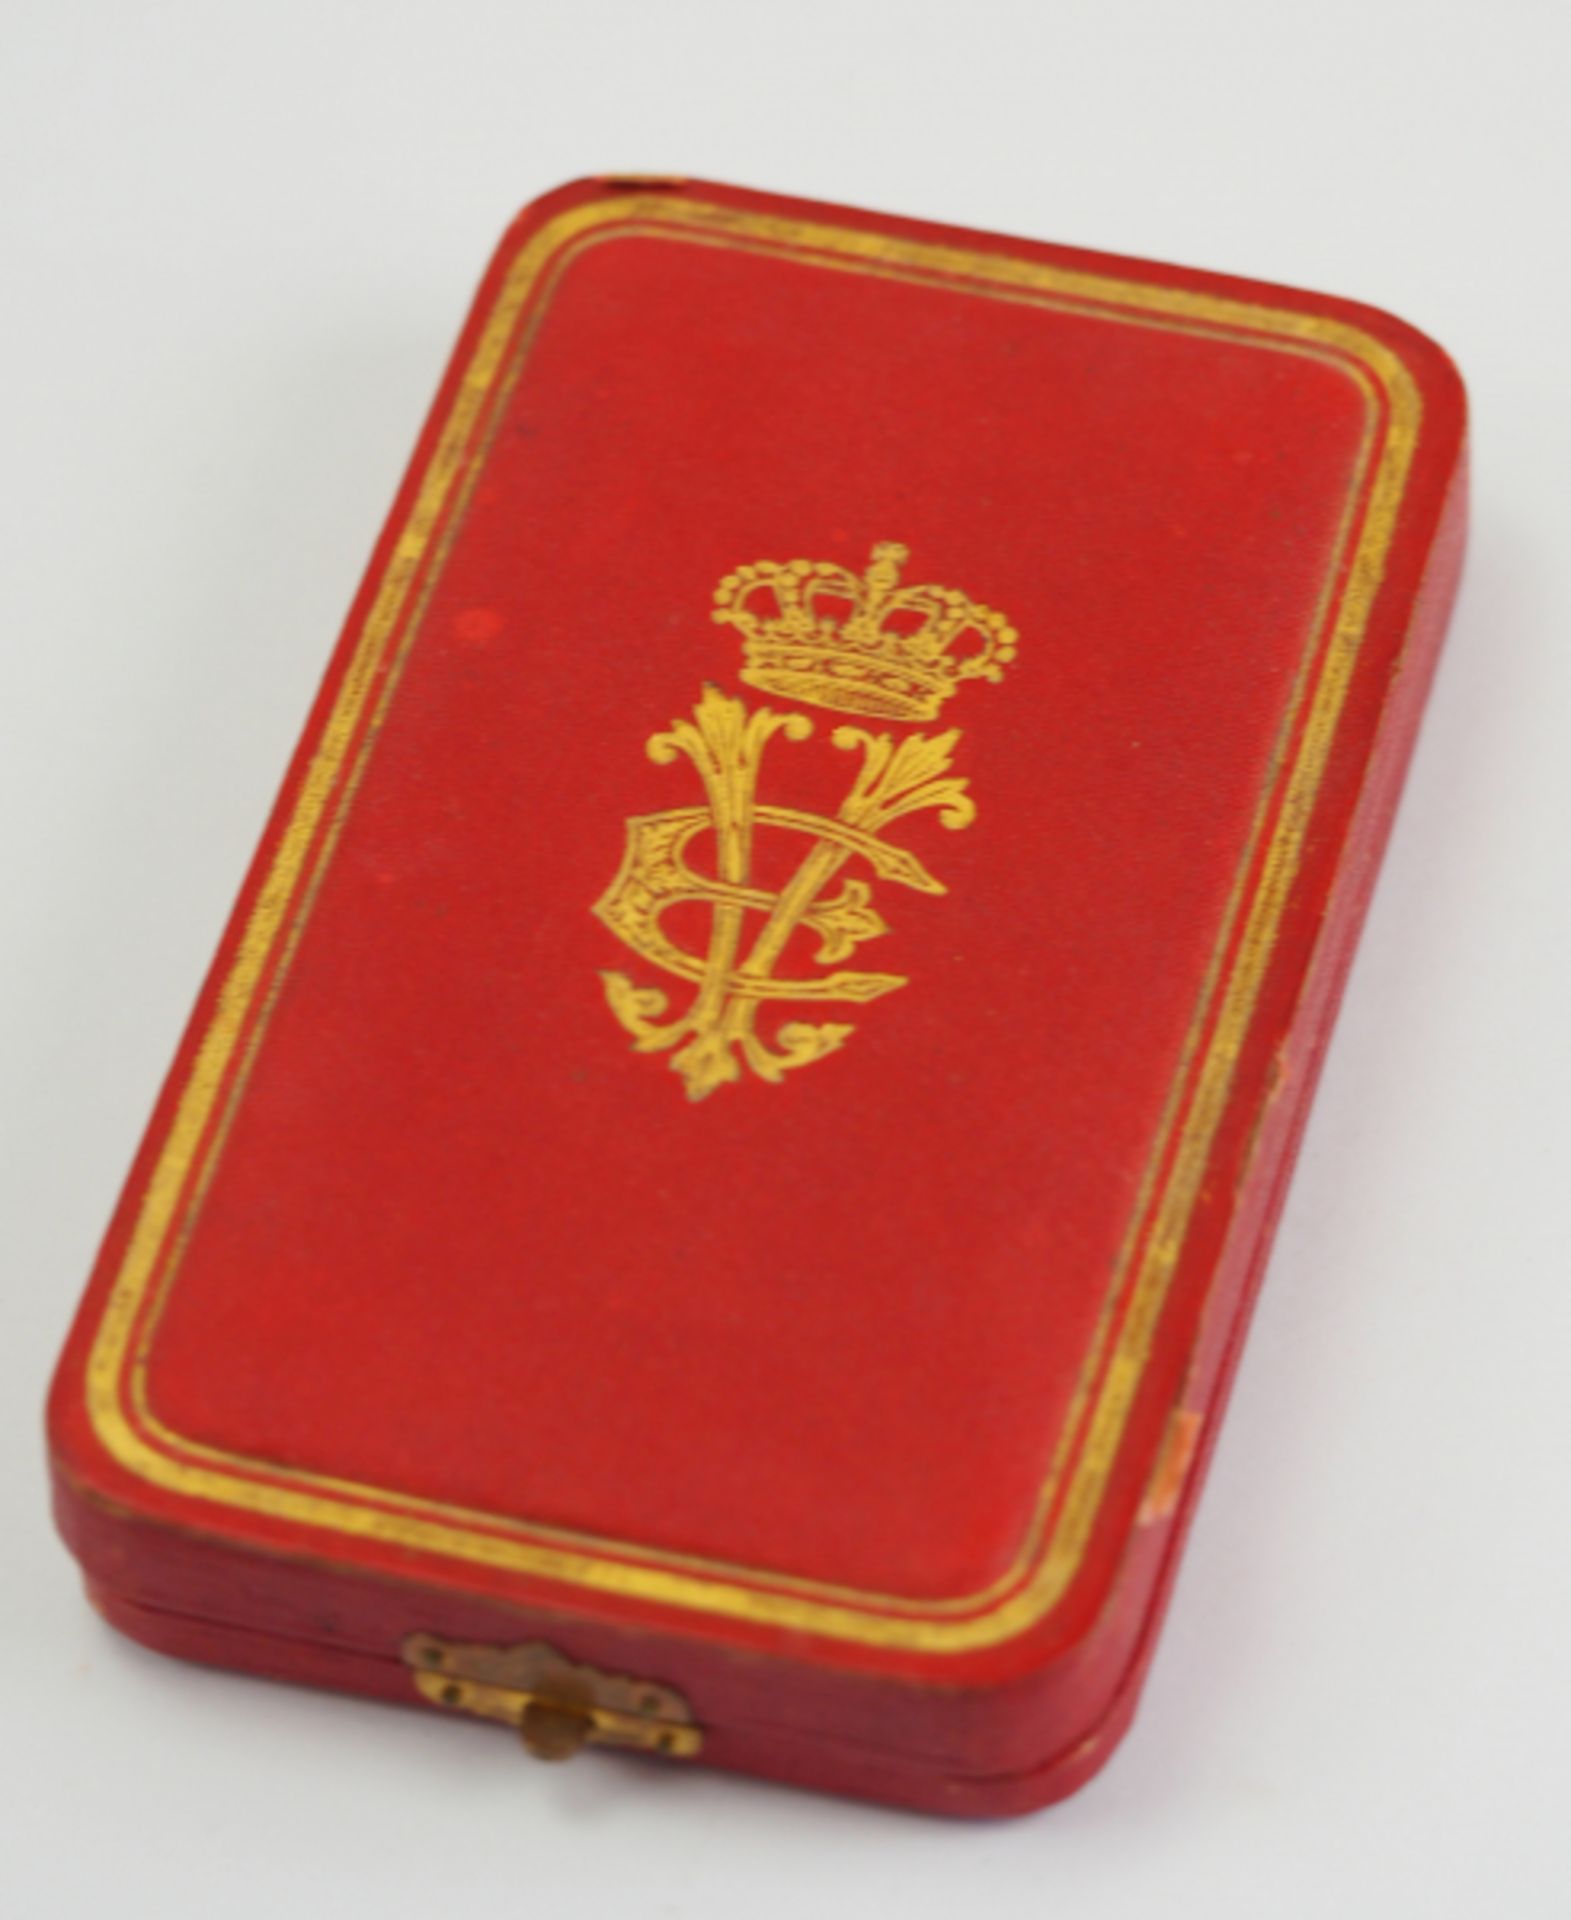 Italien: Orden der Krone von Italien, Komtur Kreuz, im Etui.Gold, teilweise emailliert, mehrteilig - Bild 4 aus 4